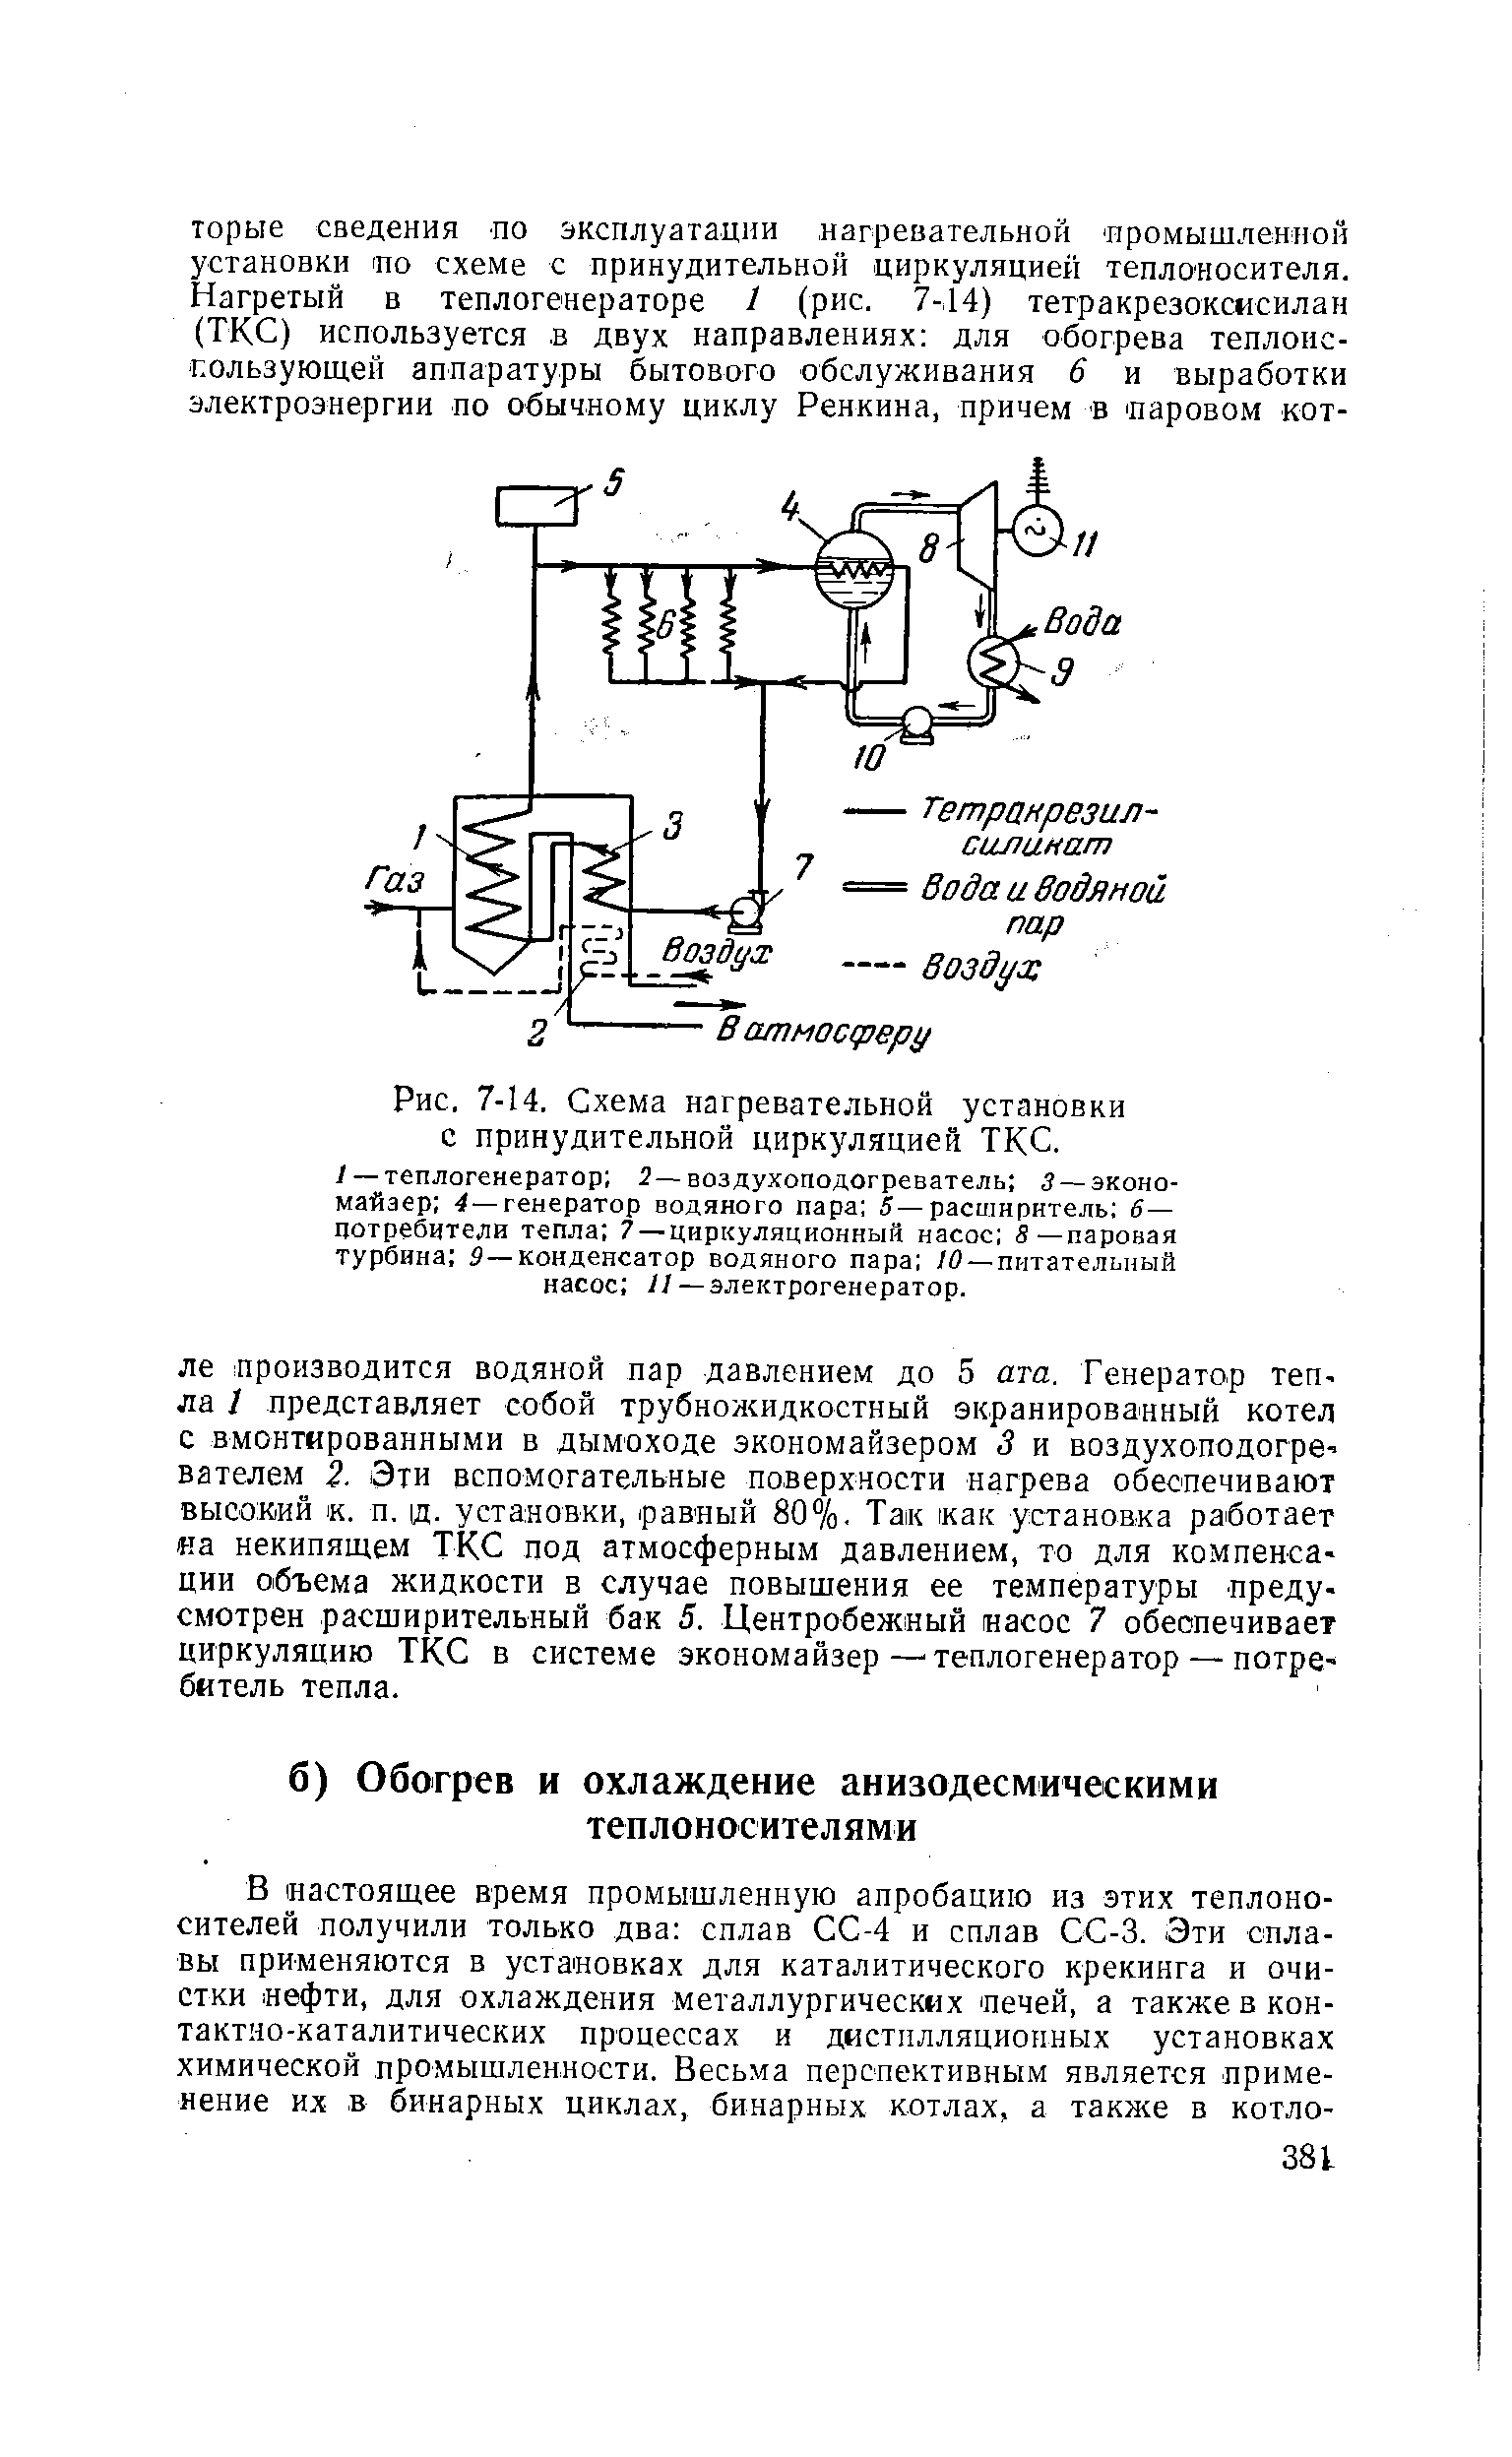 Схема нагревательной установки с принудительной циркуляцией ТКС.
